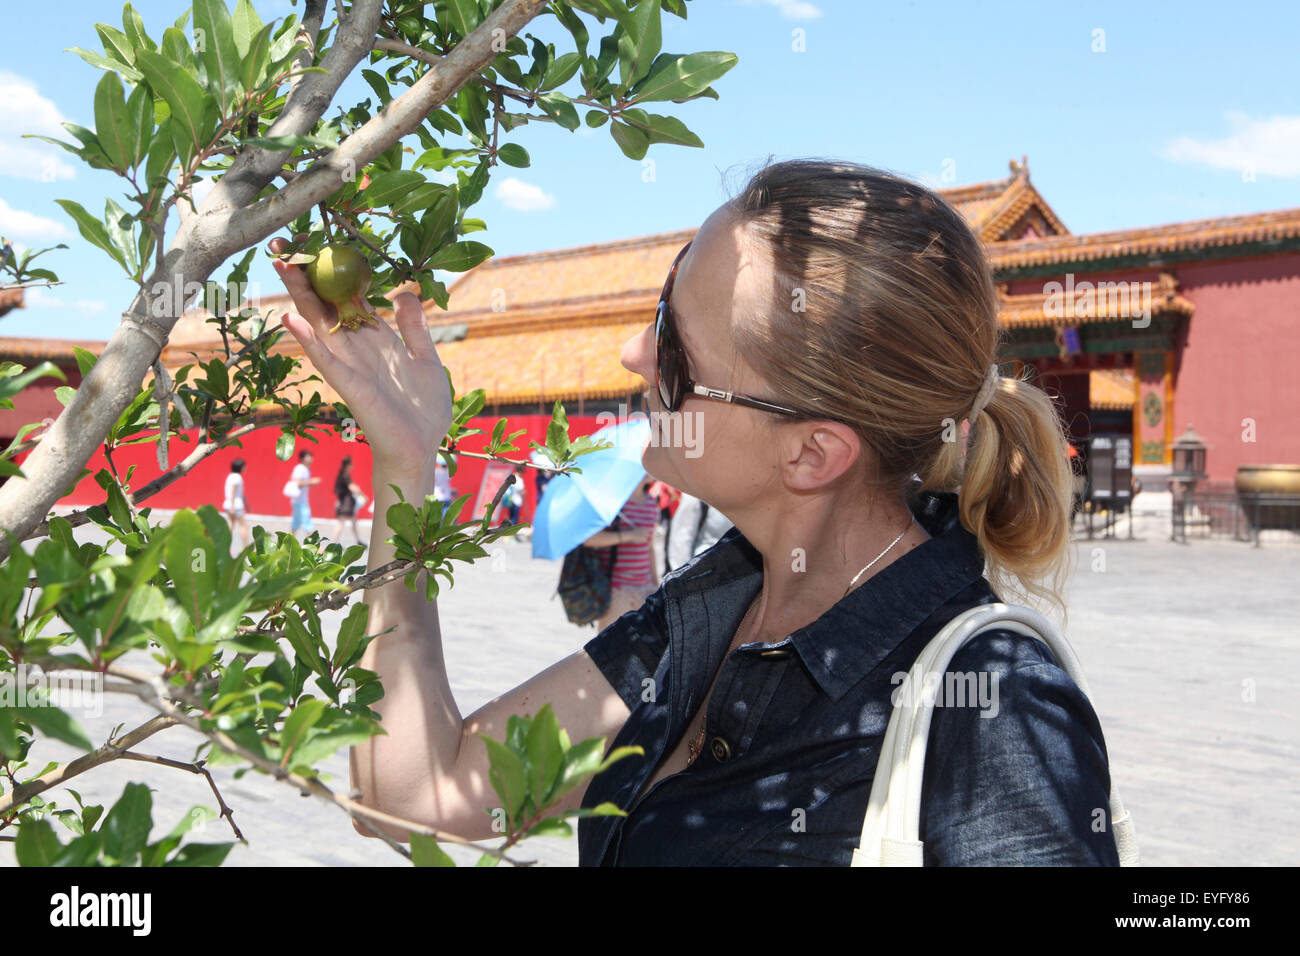 Dame européenne bénéficiant de la Chine, femme européenne touche les jeunes grenadiers, elle aime l'ombre tout en visitant la Cité Interdite, Beijing Banque D'Images